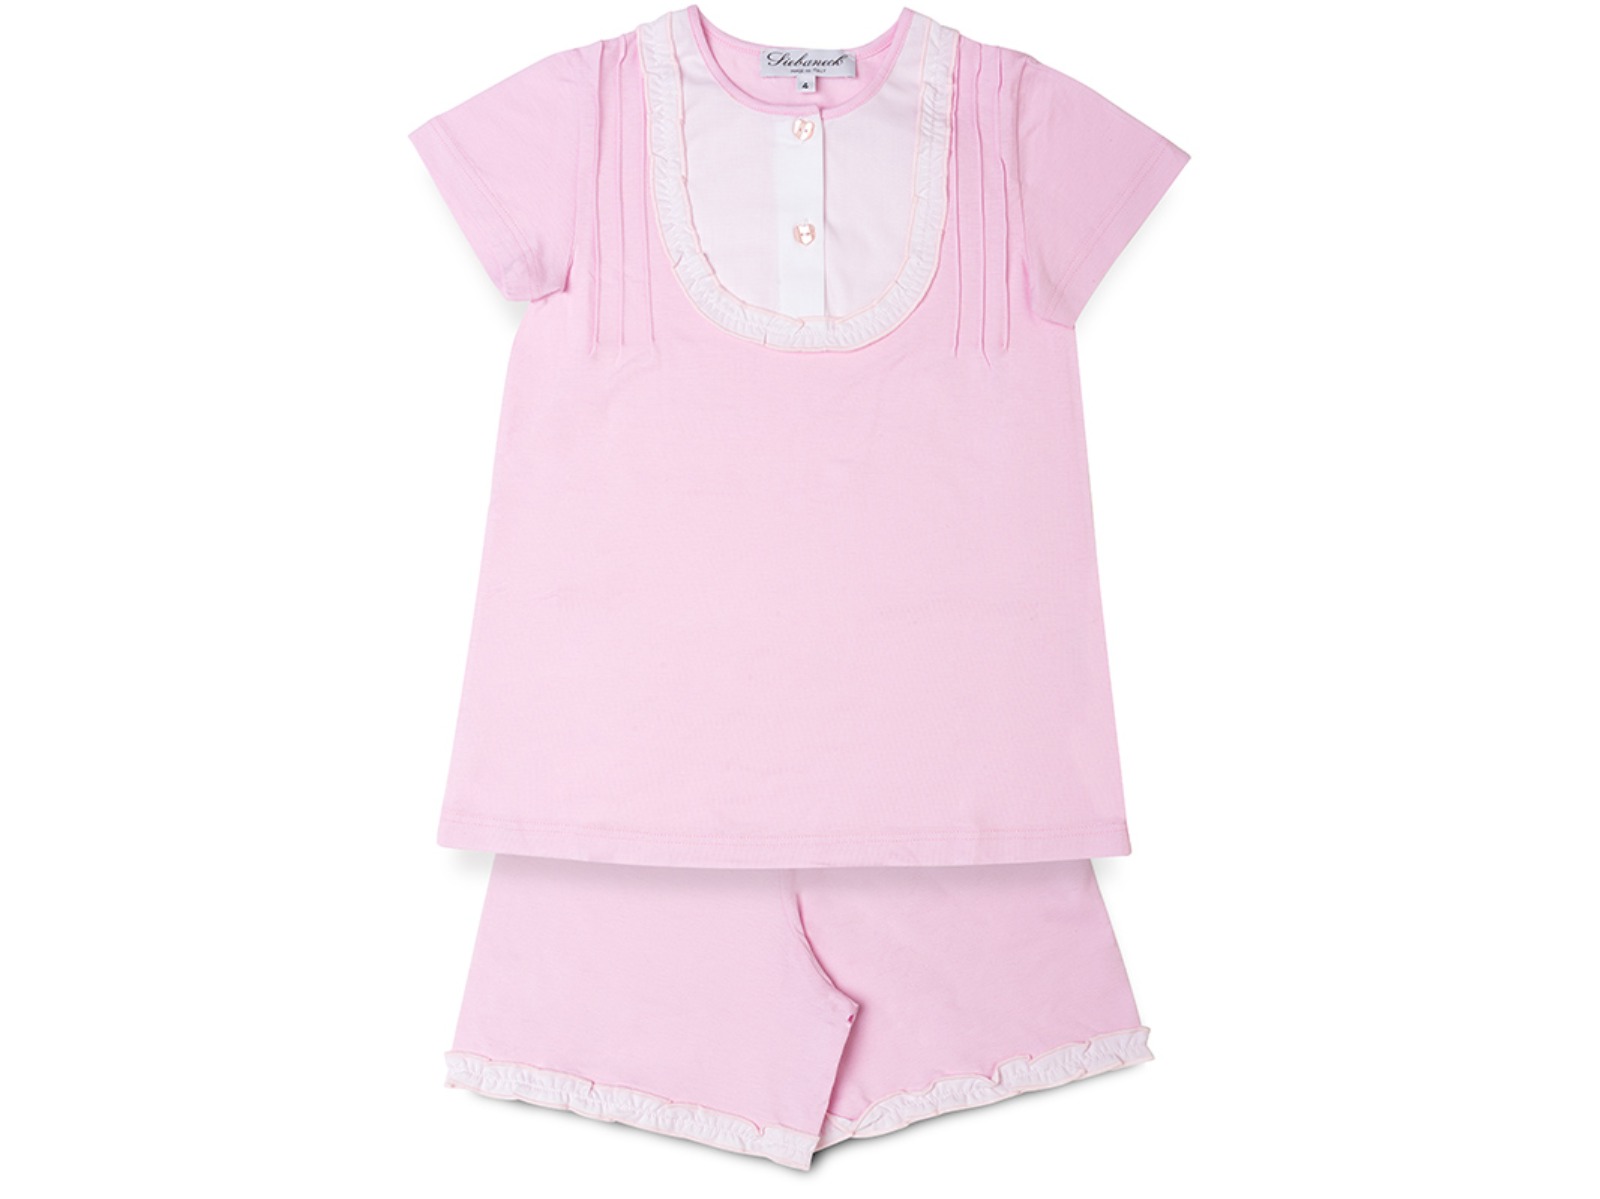 Siebaneck, i pigiami artigianali : - bambina  - mod.23dav rosa-bianco